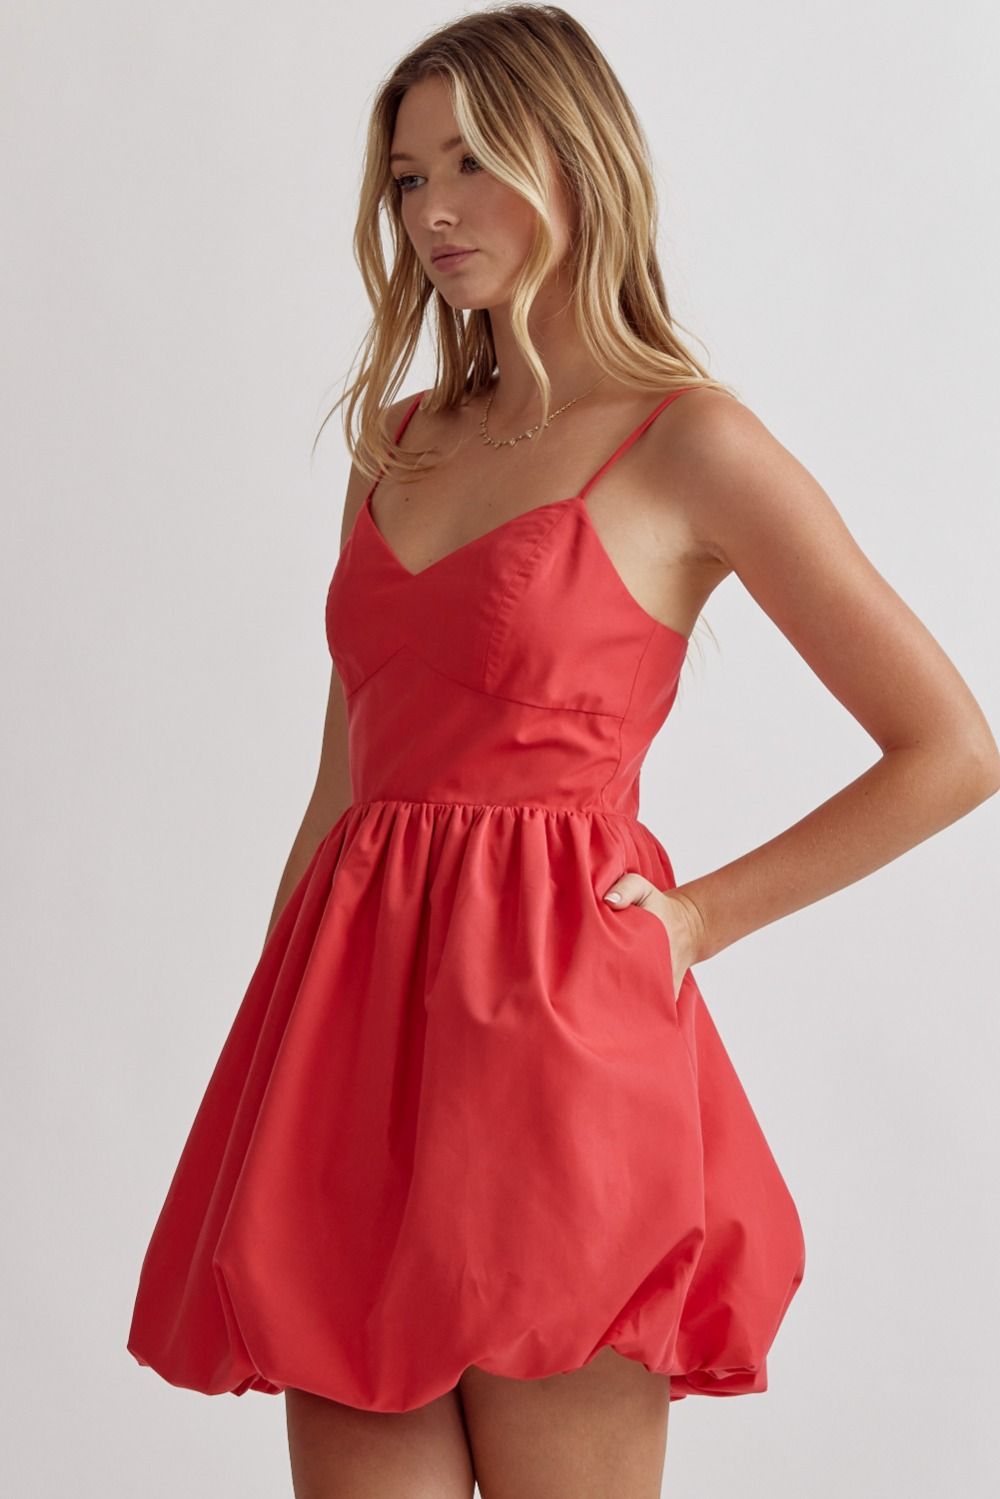 ENTRO INC Women's Dresses RED / S Bubble Hem Spaghetti Strap Mini Dress || David's Clothing D22244